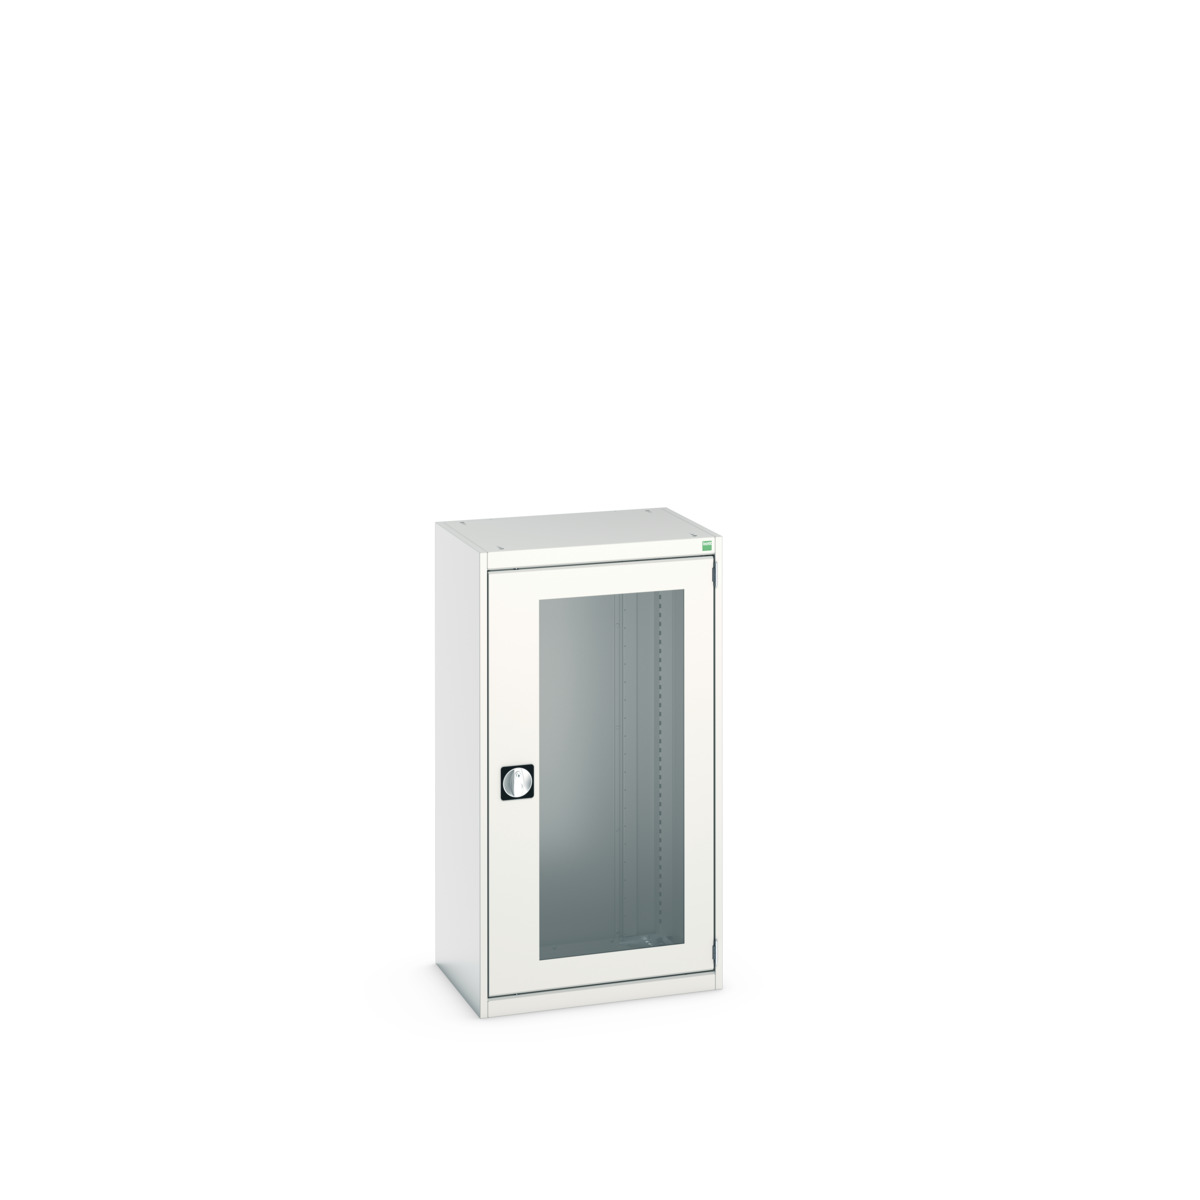 40011057.16V - cubio cupboard